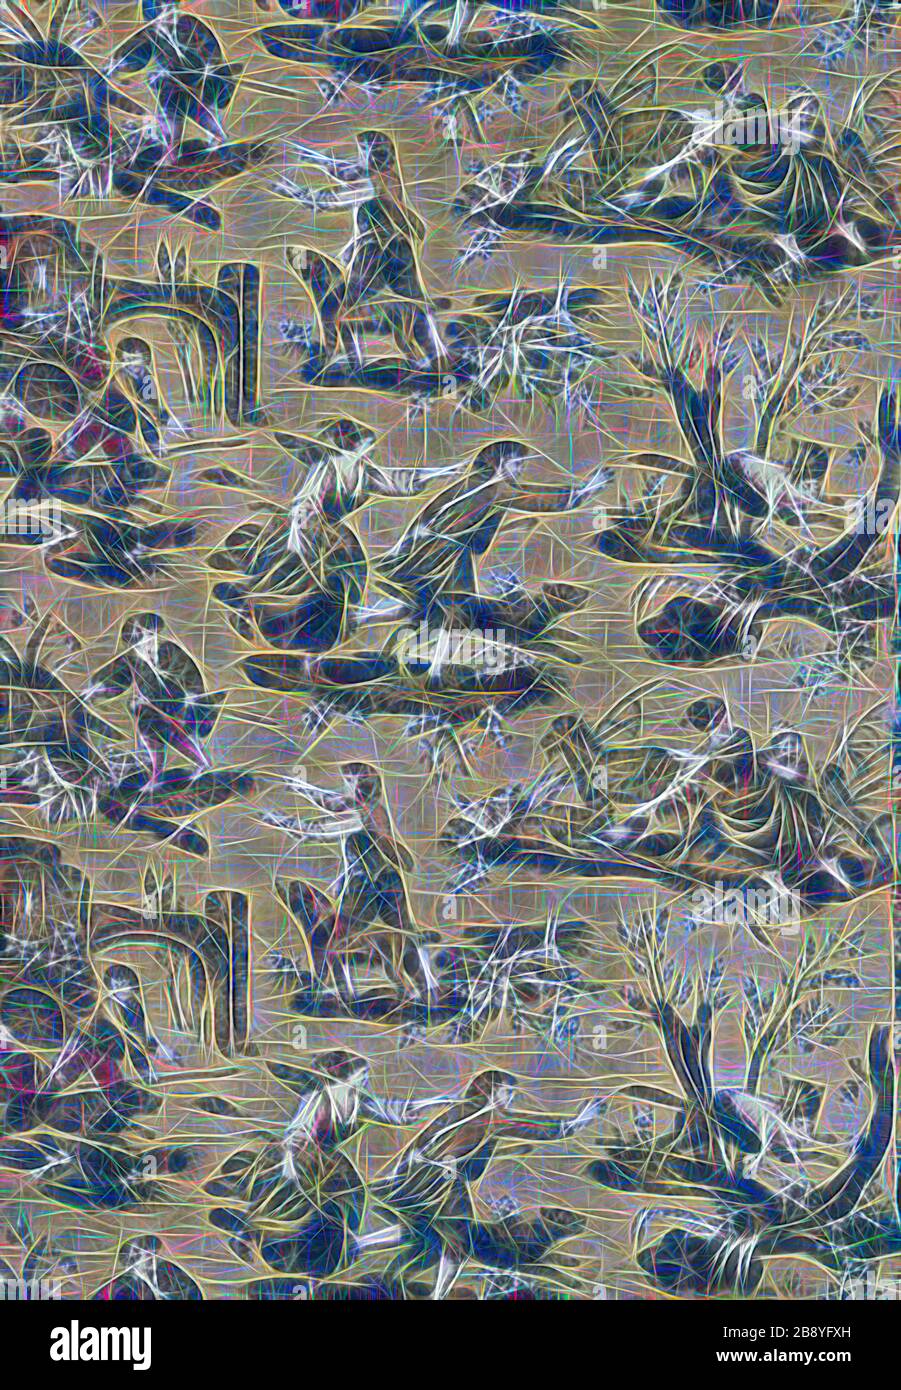 Au Loup! (Tessuto d'arredamento), 1783/89, progettato da Jean Baptiste Huet (francese, 1745–1811) dopo Jacques Stella (francese, 1569-1657) e altri, prodotto da Christophe Phillipe Oberkampf (francese, 1738-1815), Francia, Jouy-en-Josas, Francia, cotone, tessitura piana, copperplate, 93 × 136 cm (36 5/8 × Gibon, immaginato in 53 Gibon). design di calore allegro di luminosità e raggi di luce radianza. Arte classica reinventata con un tocco moderno. La fotografia ispirata al futurismo, che abbraccia l'energia dinamica della tecnologia moderna, del movimento, della velocità e rivoluziona la cultura. Foto Stock